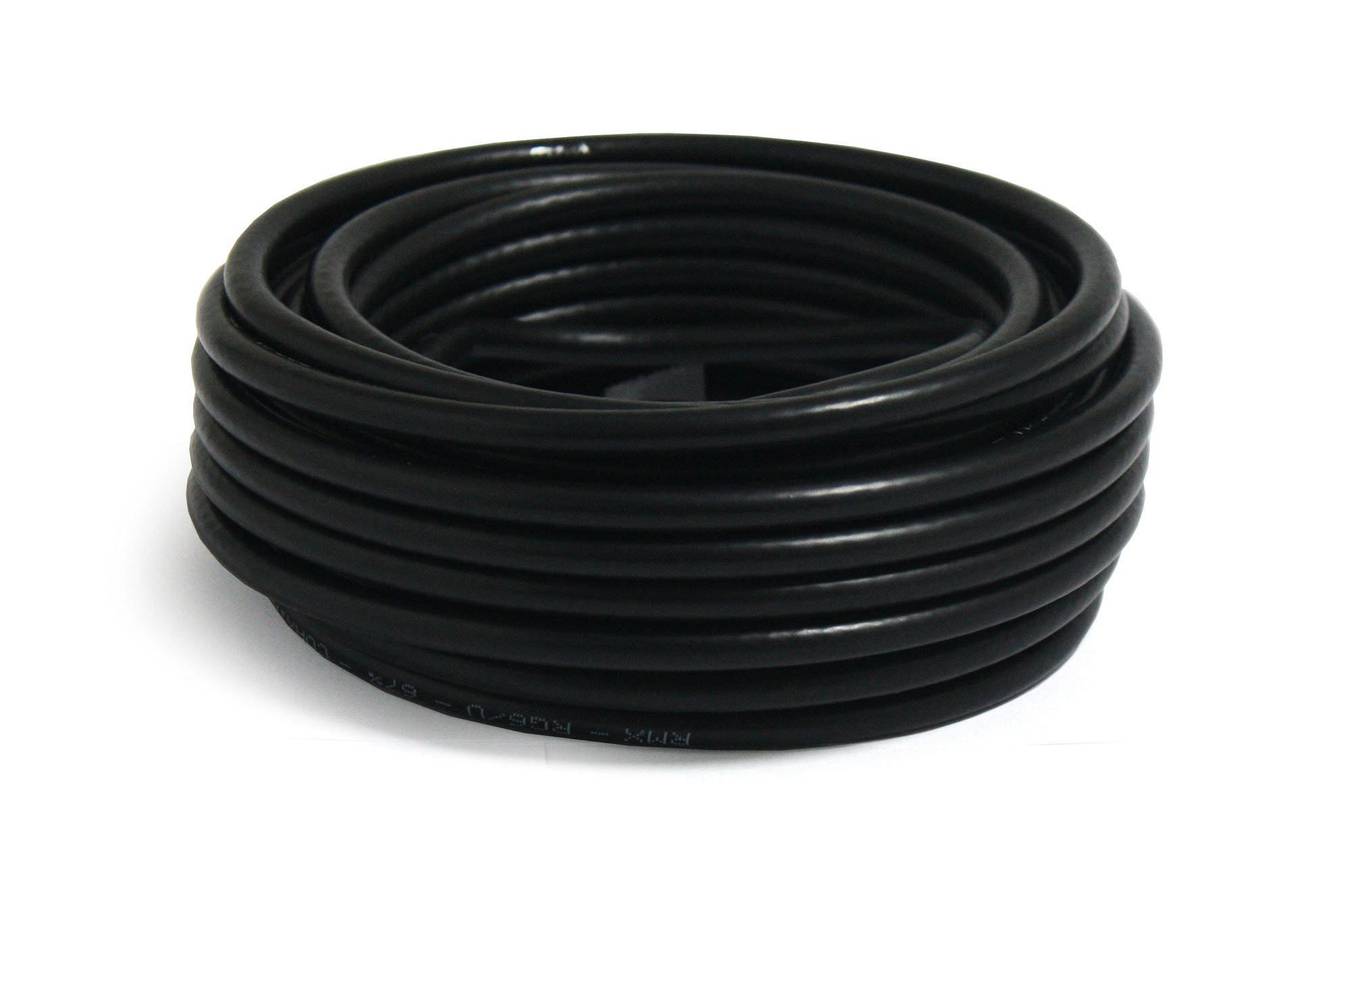 Electromex rollo cable coaxial 10 metros rg 6 u negro (1 rollo de cable)